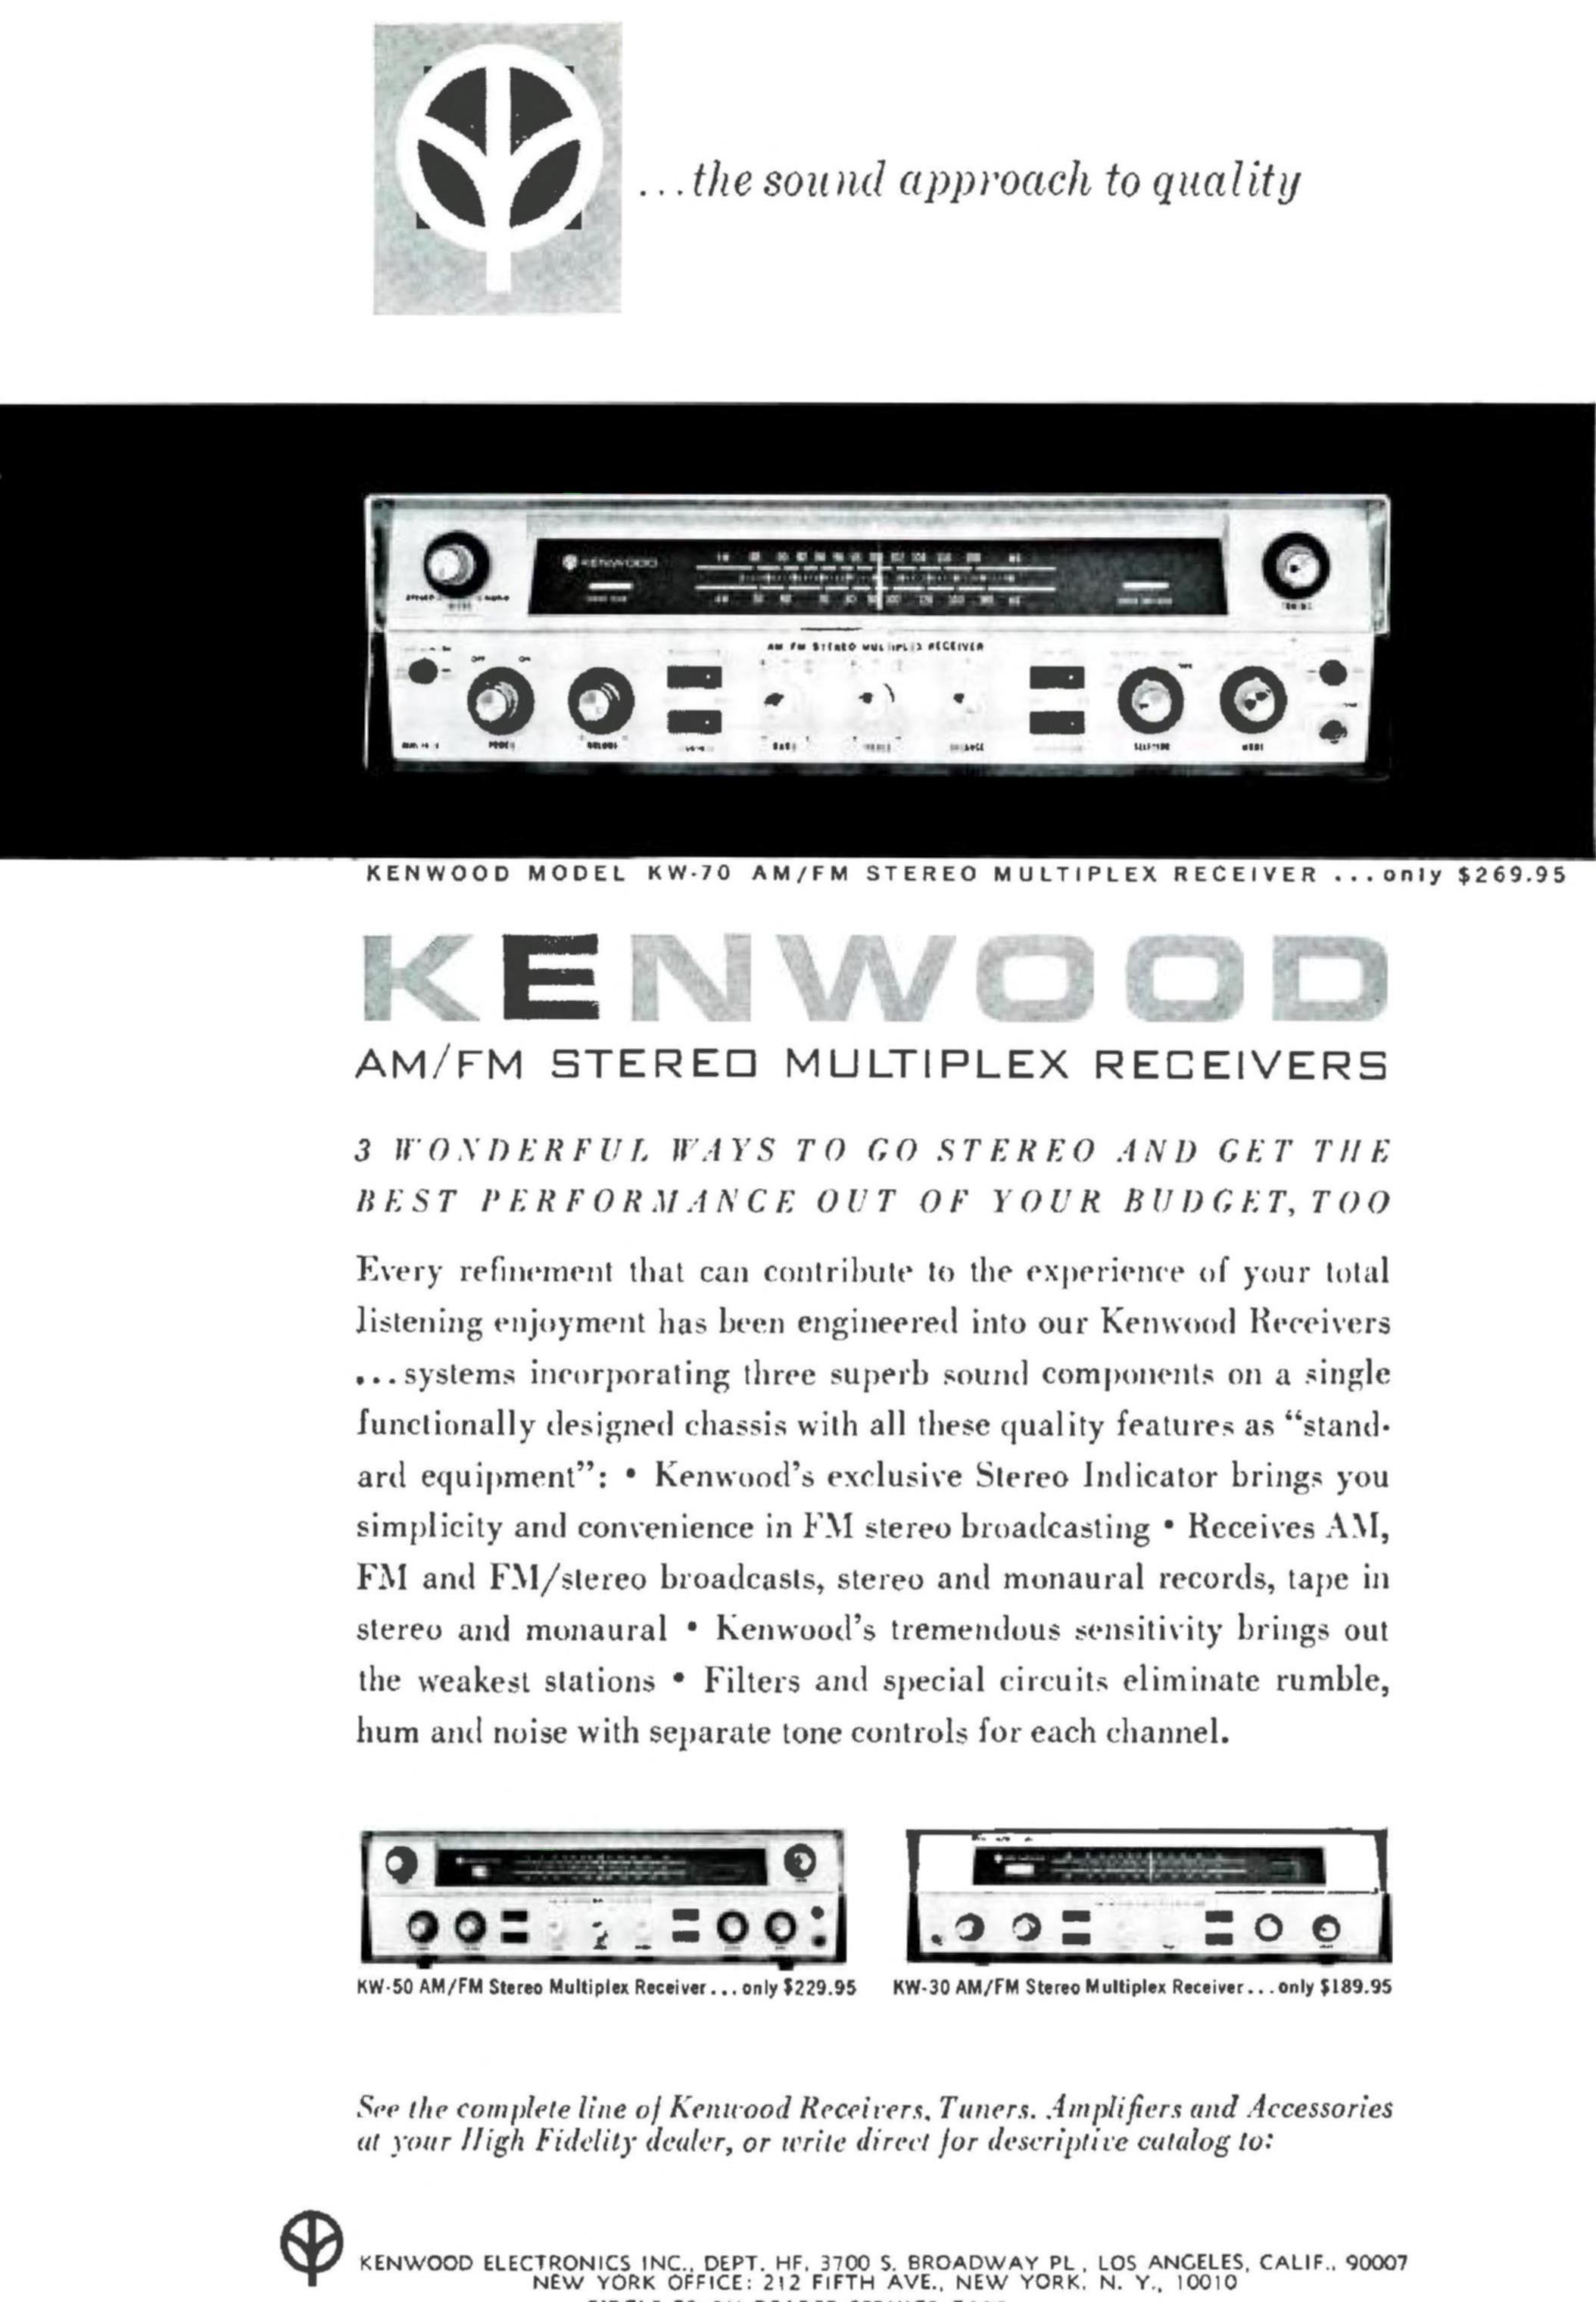 Kenwood KW-70-Werbung-1964.jpg